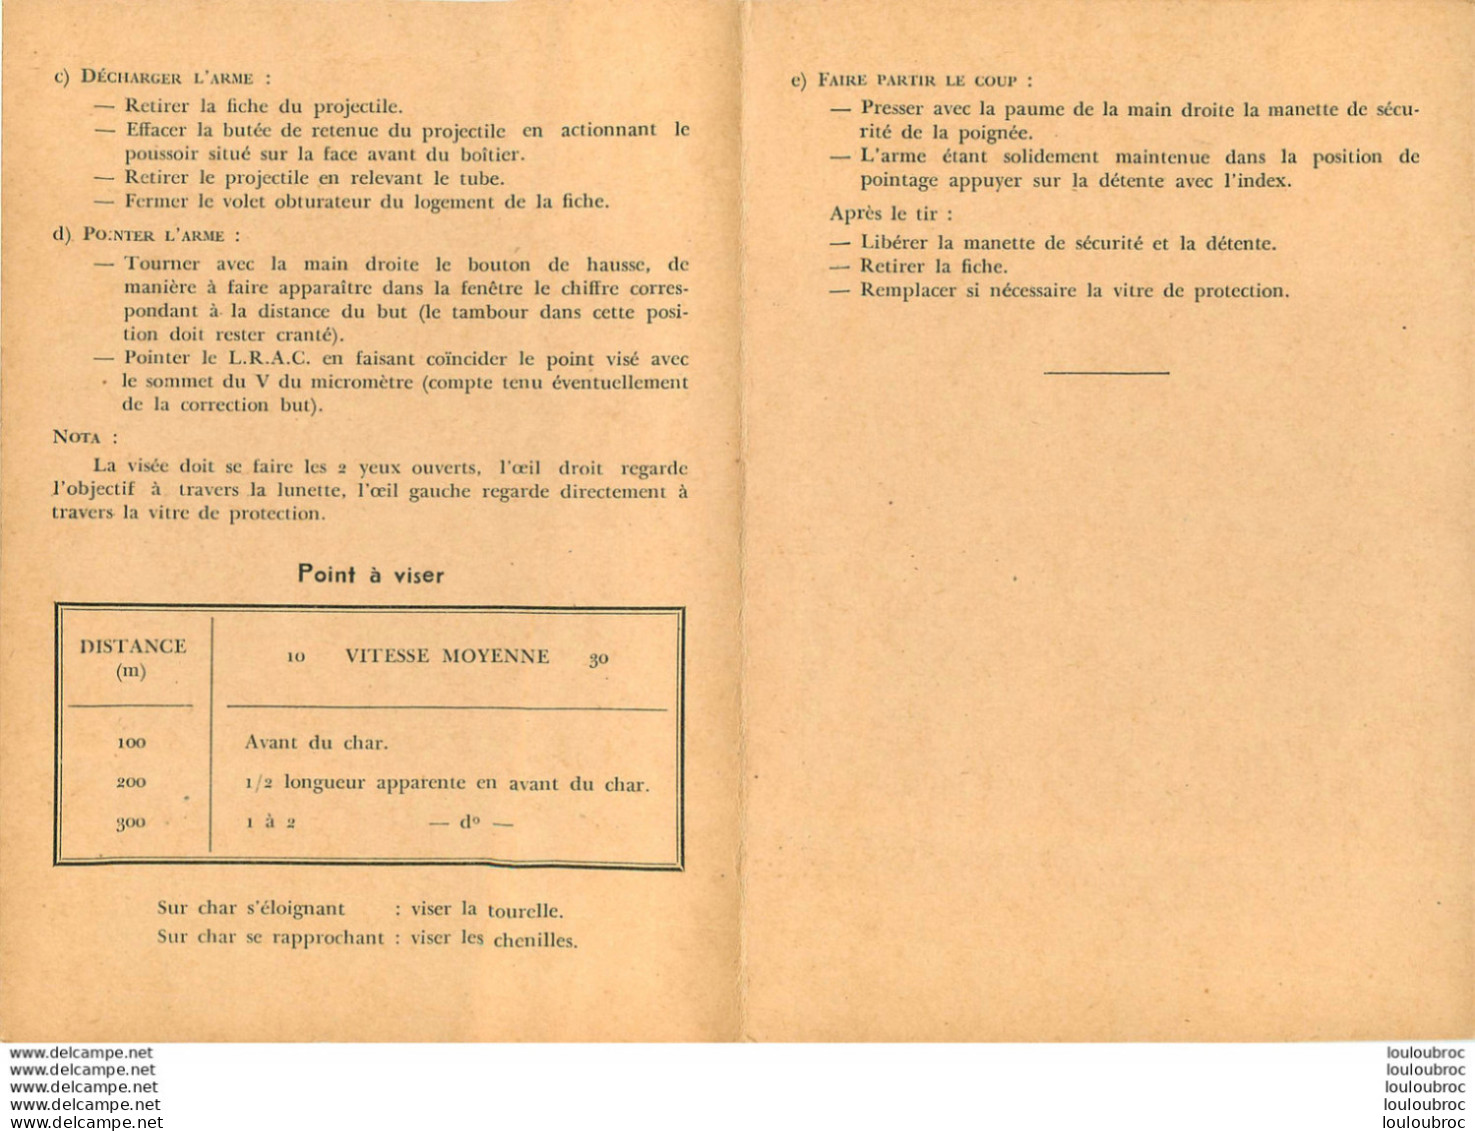 LANCE ROQUETTES ANTICHARS DE 73 mm MODELE 1950 NOTICE COMPLETE AVEC SES FICHES